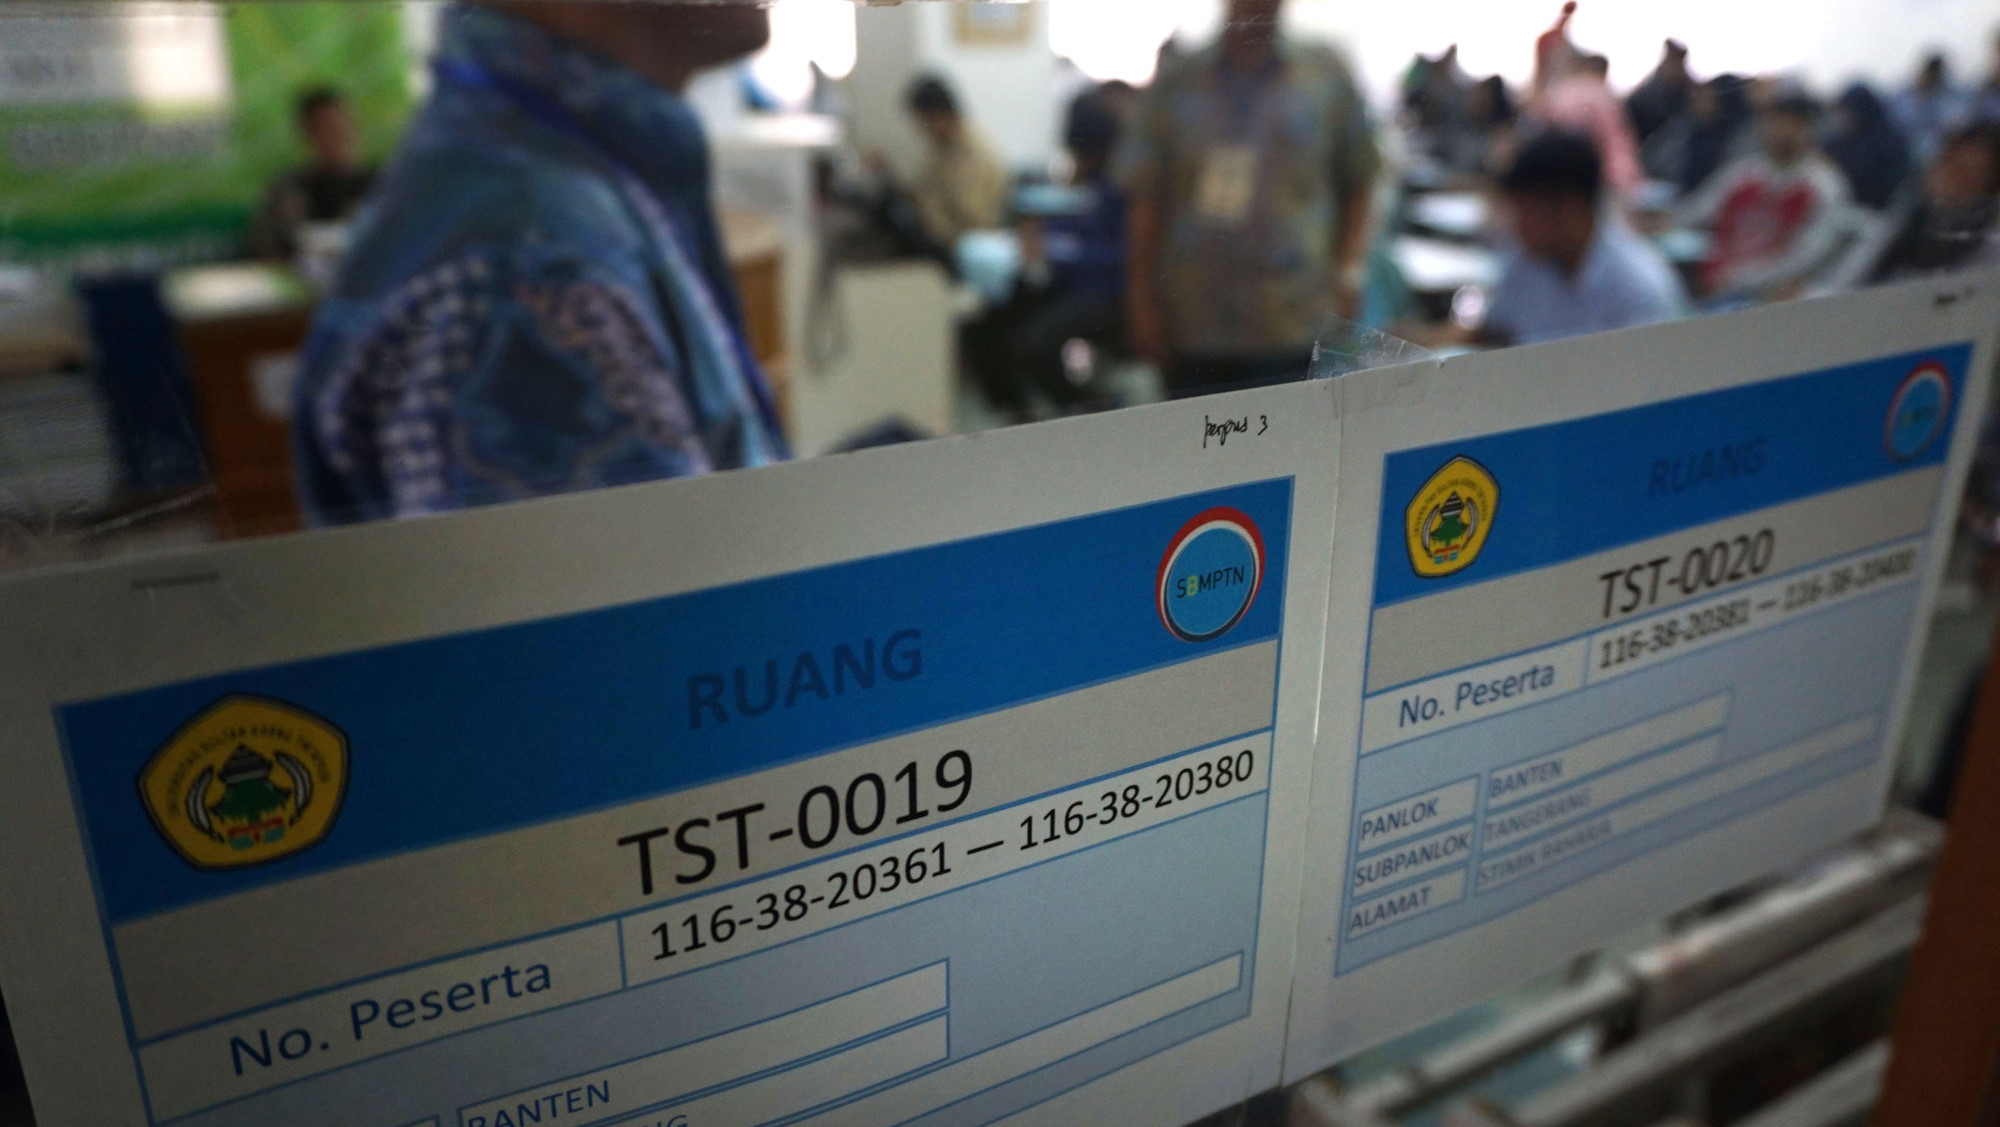 Pendaftar SBMPTN di Padang Capai 36 000 Jelang Penutupan Hari Ini